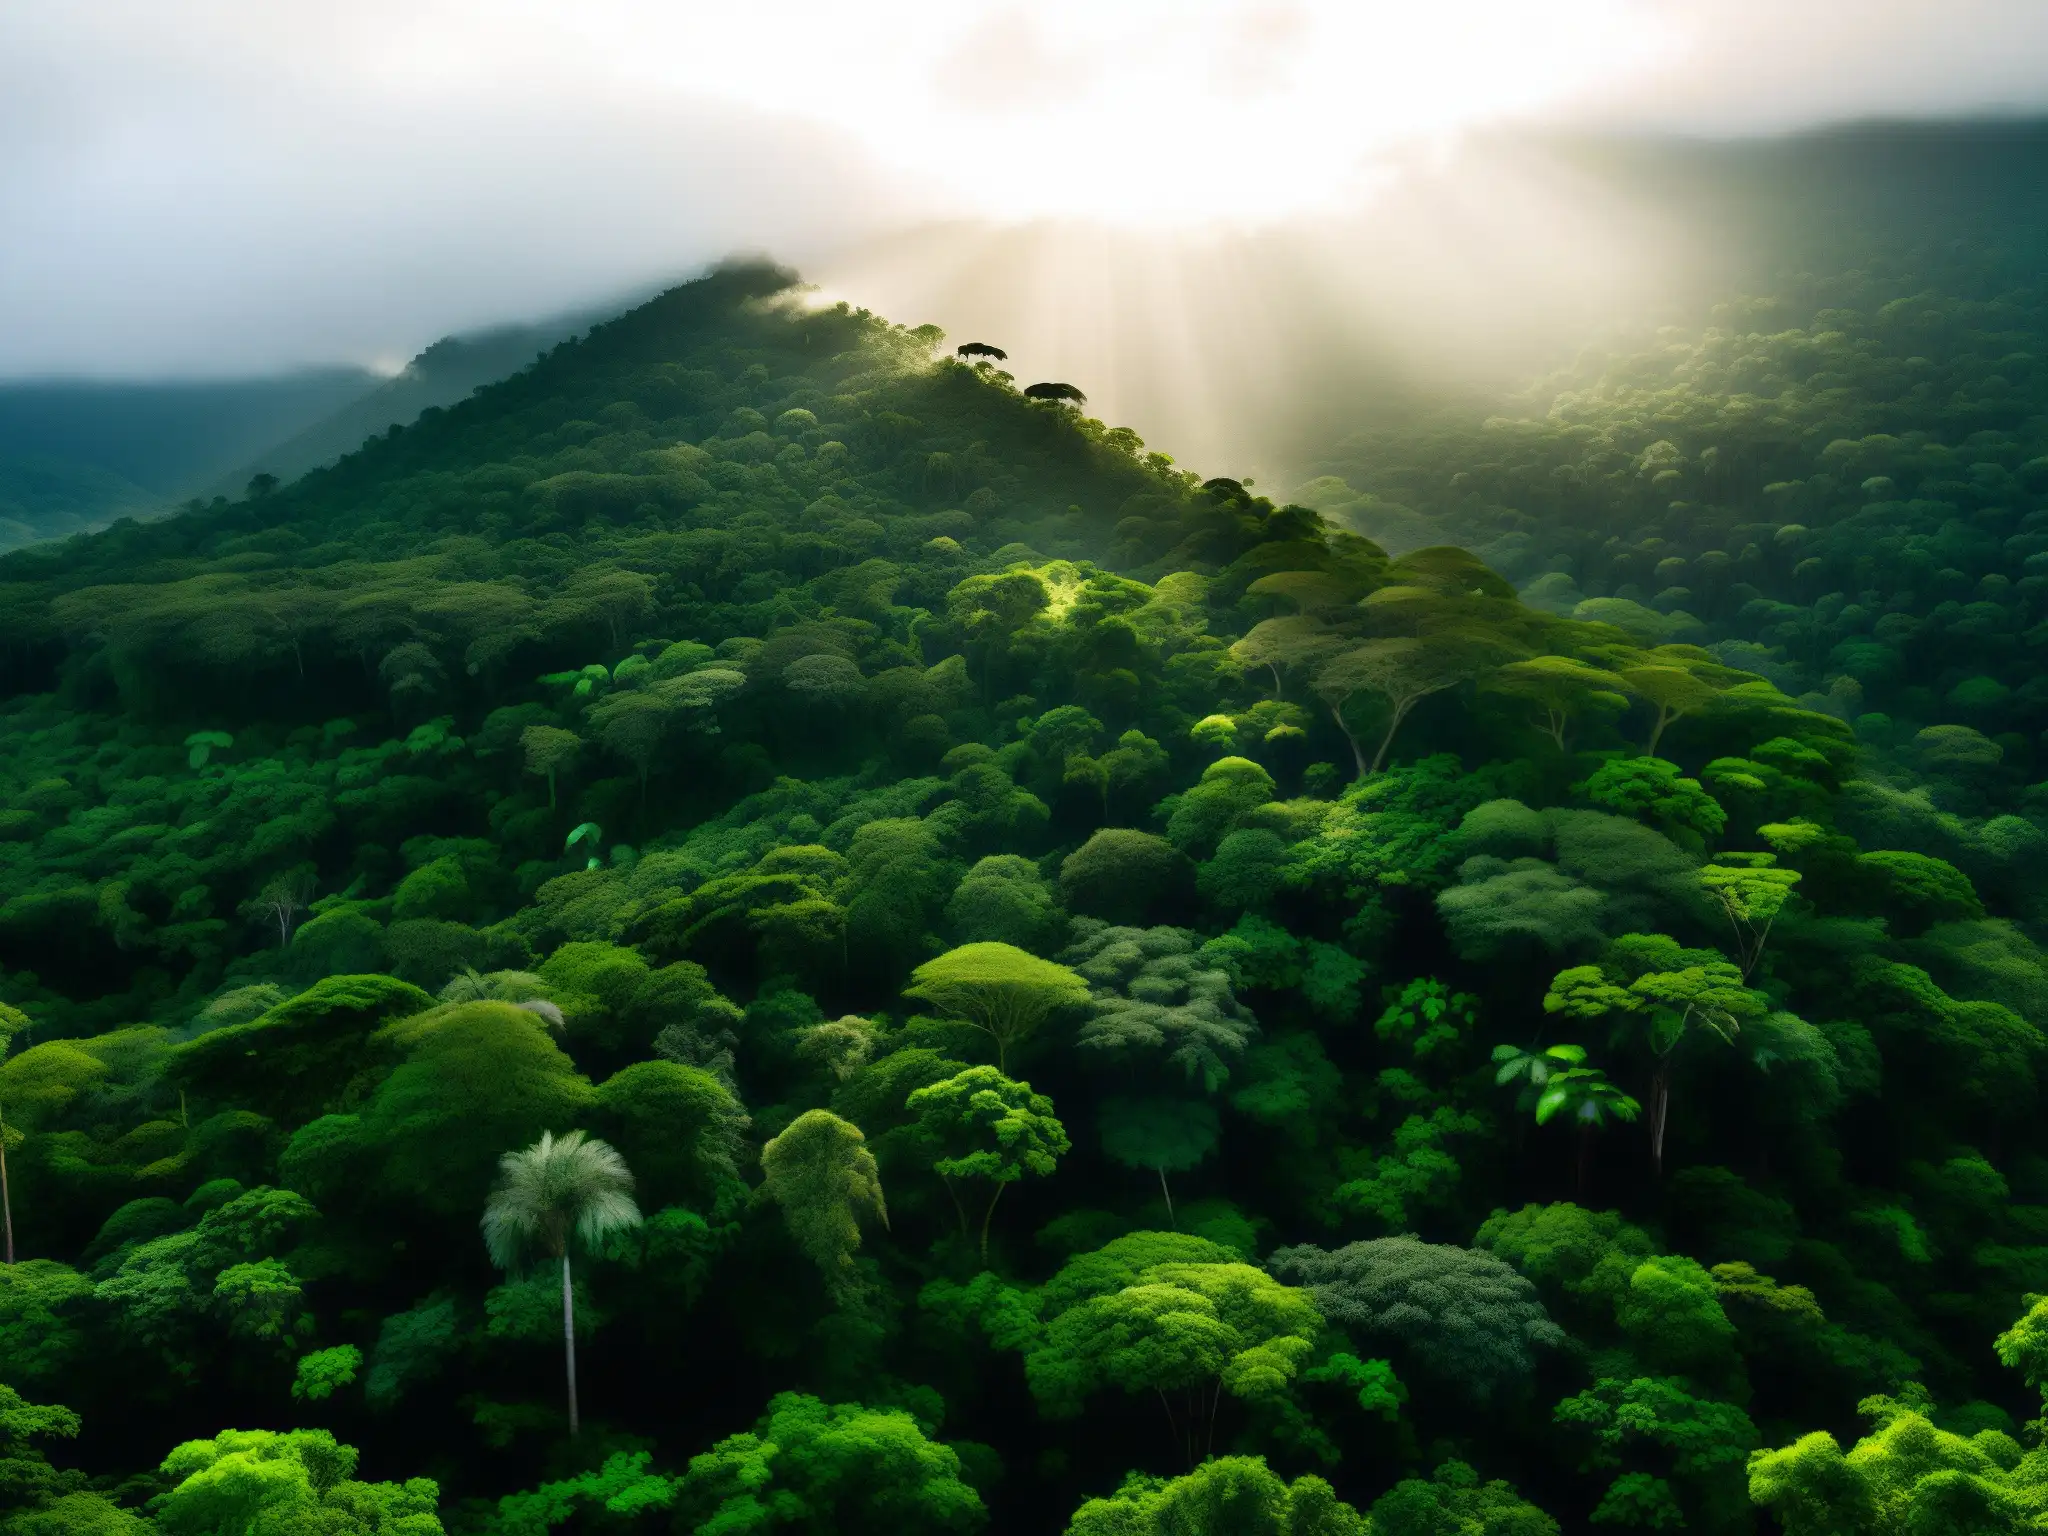 Un majestuoso bosque tropical brasileño, con exuberante vegetación verde, árboles imponentes y vida silvestre oculta